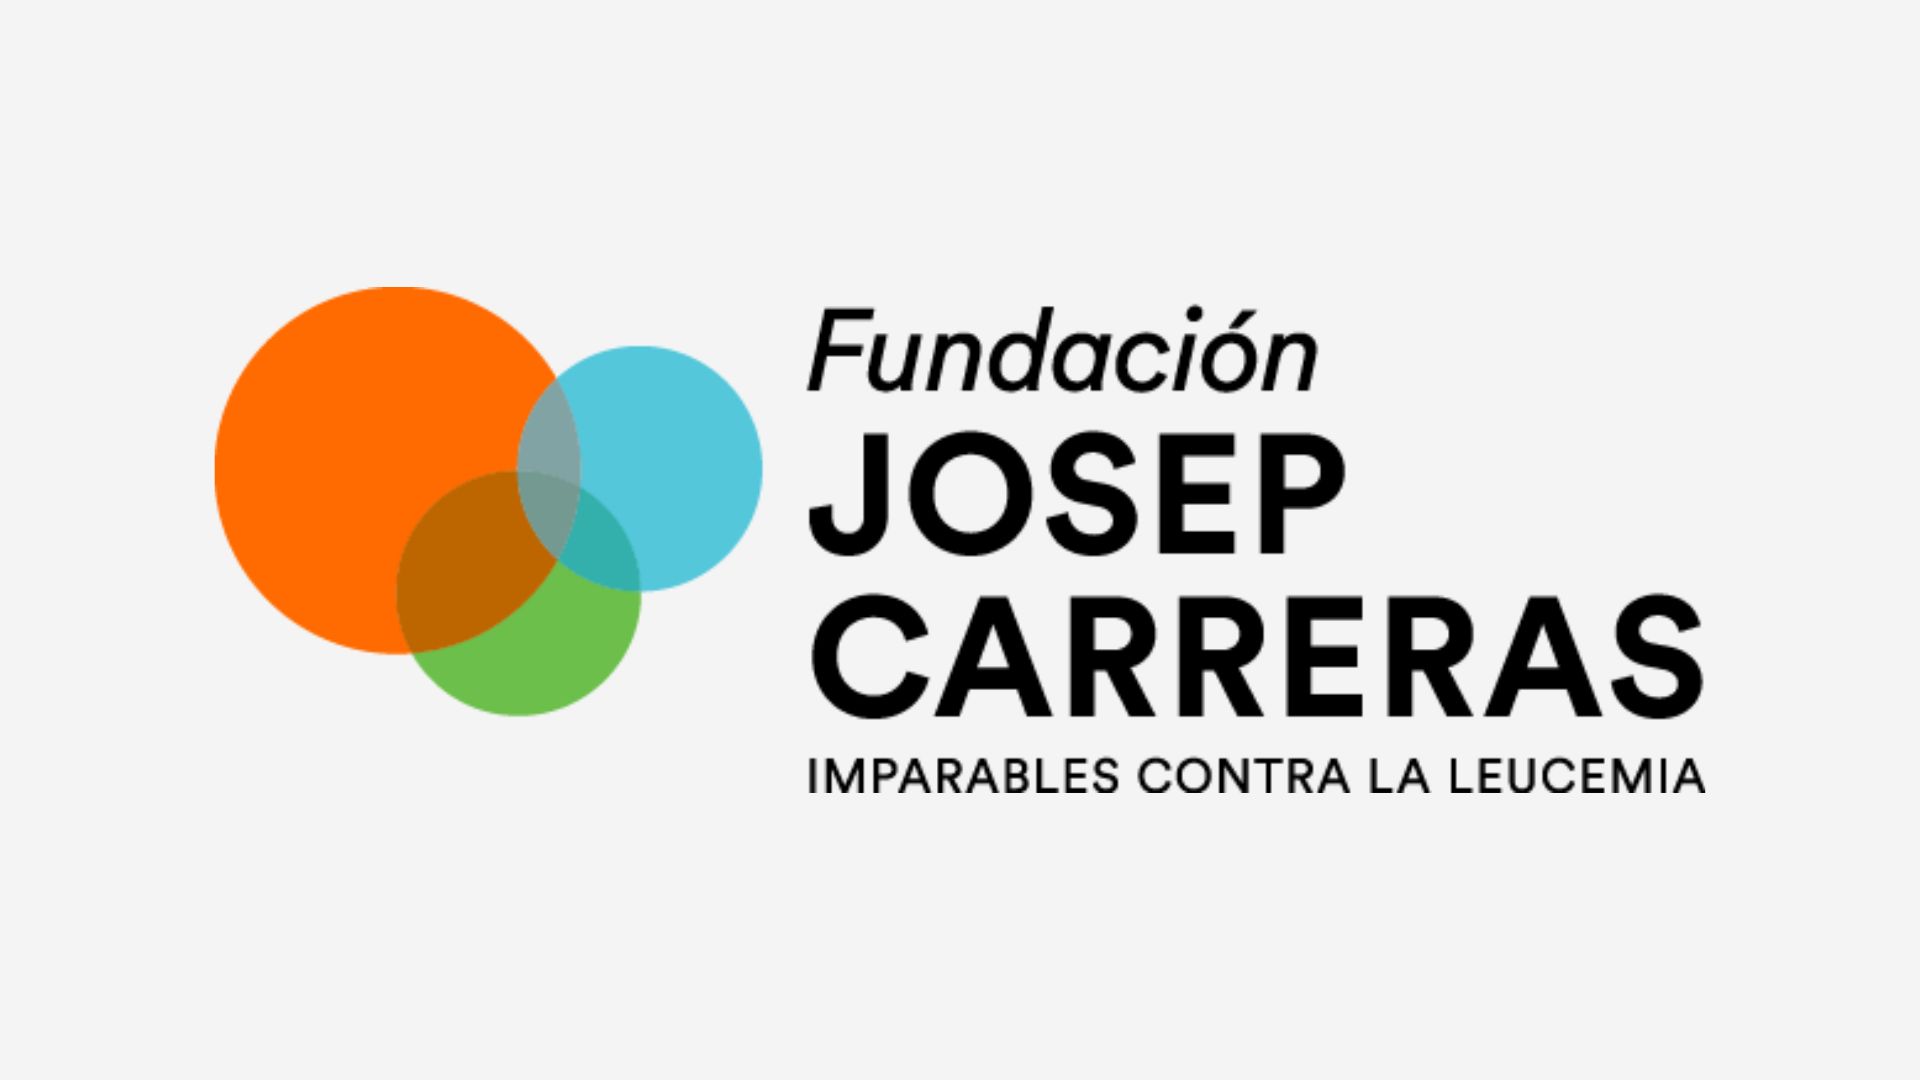 Durante varios días la Fundación Jopep Carreras ha informado de la labor que hacen en la lucha contra la leucemia, sobre todo en los programas de Investigación y la ayuda a los enfermos y sus familiares, en el Parque Comercial Viapark, gestionado por Bacaf Real Estate, Viapark, situado en la zona norte de El Parador, en Vícar (Almería).